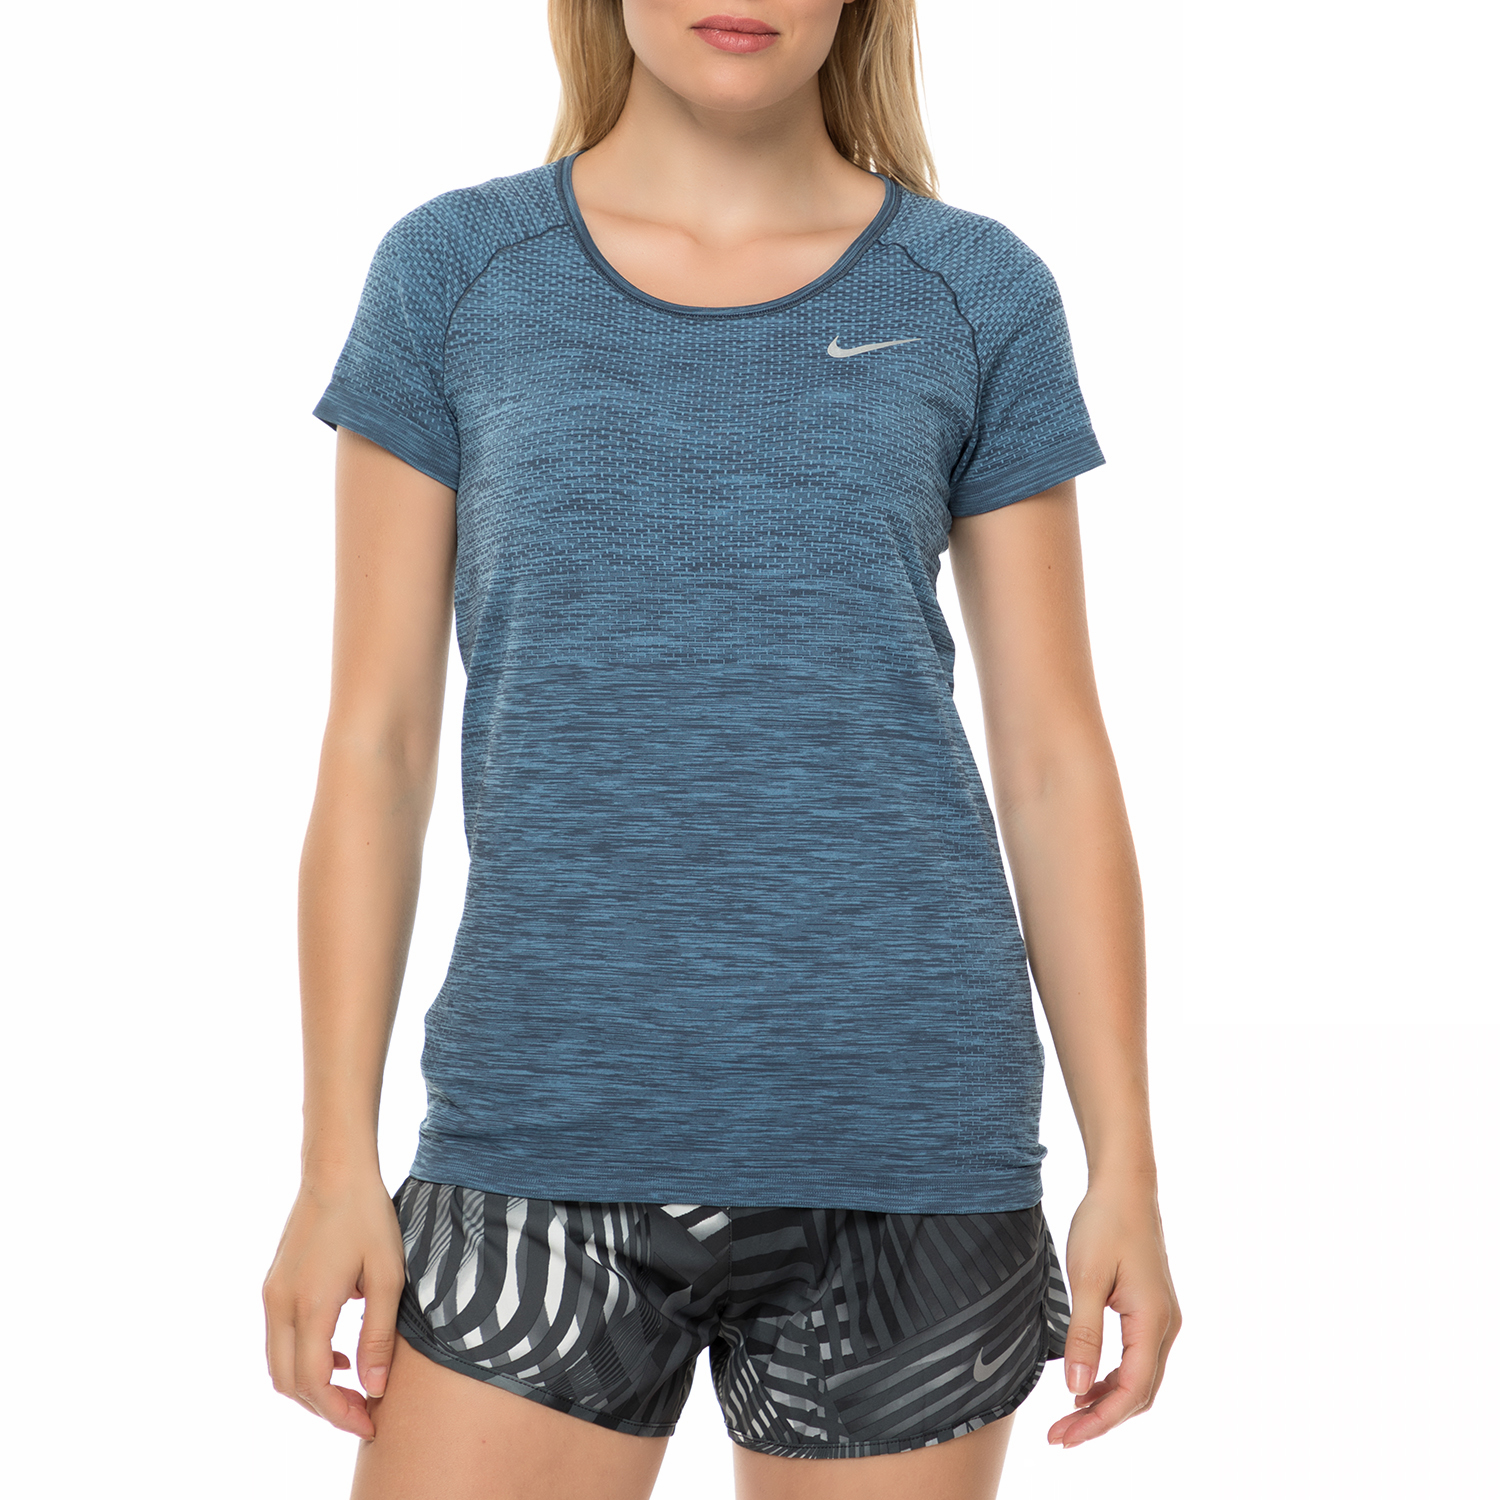 Γυναικεία/Ρούχα/Αθλητικά/T-shirt-Τοπ NIKE - Γυναικεία κοντομάνικη μπλούζα Nike γκρι-μπλε